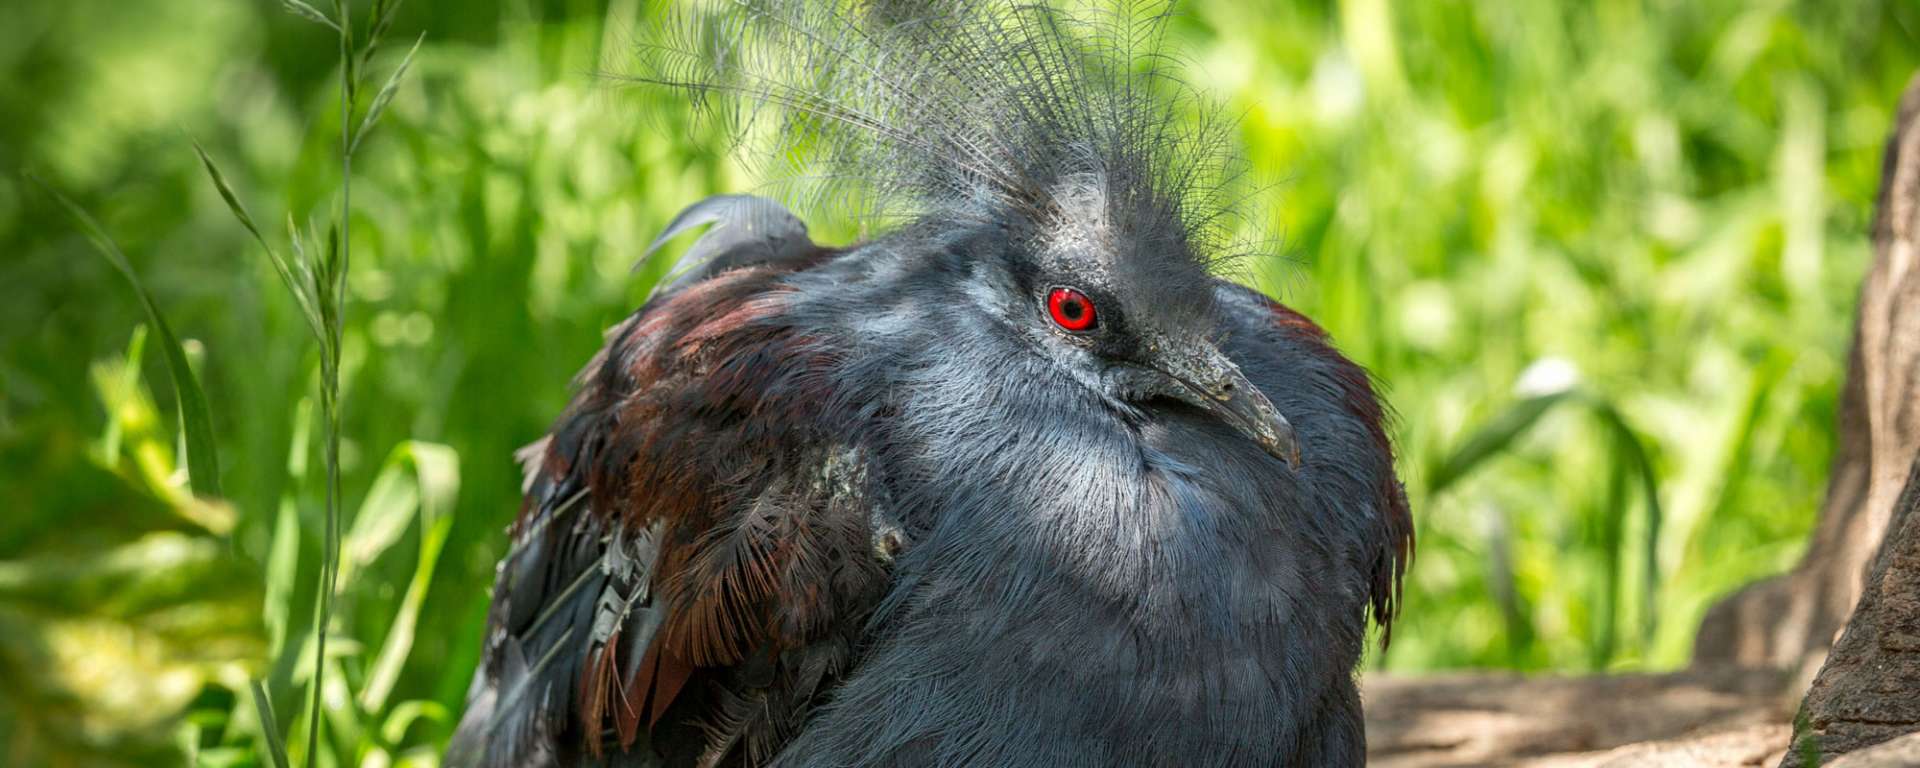 Blue Crowned Pigeon by Steve-Murdock